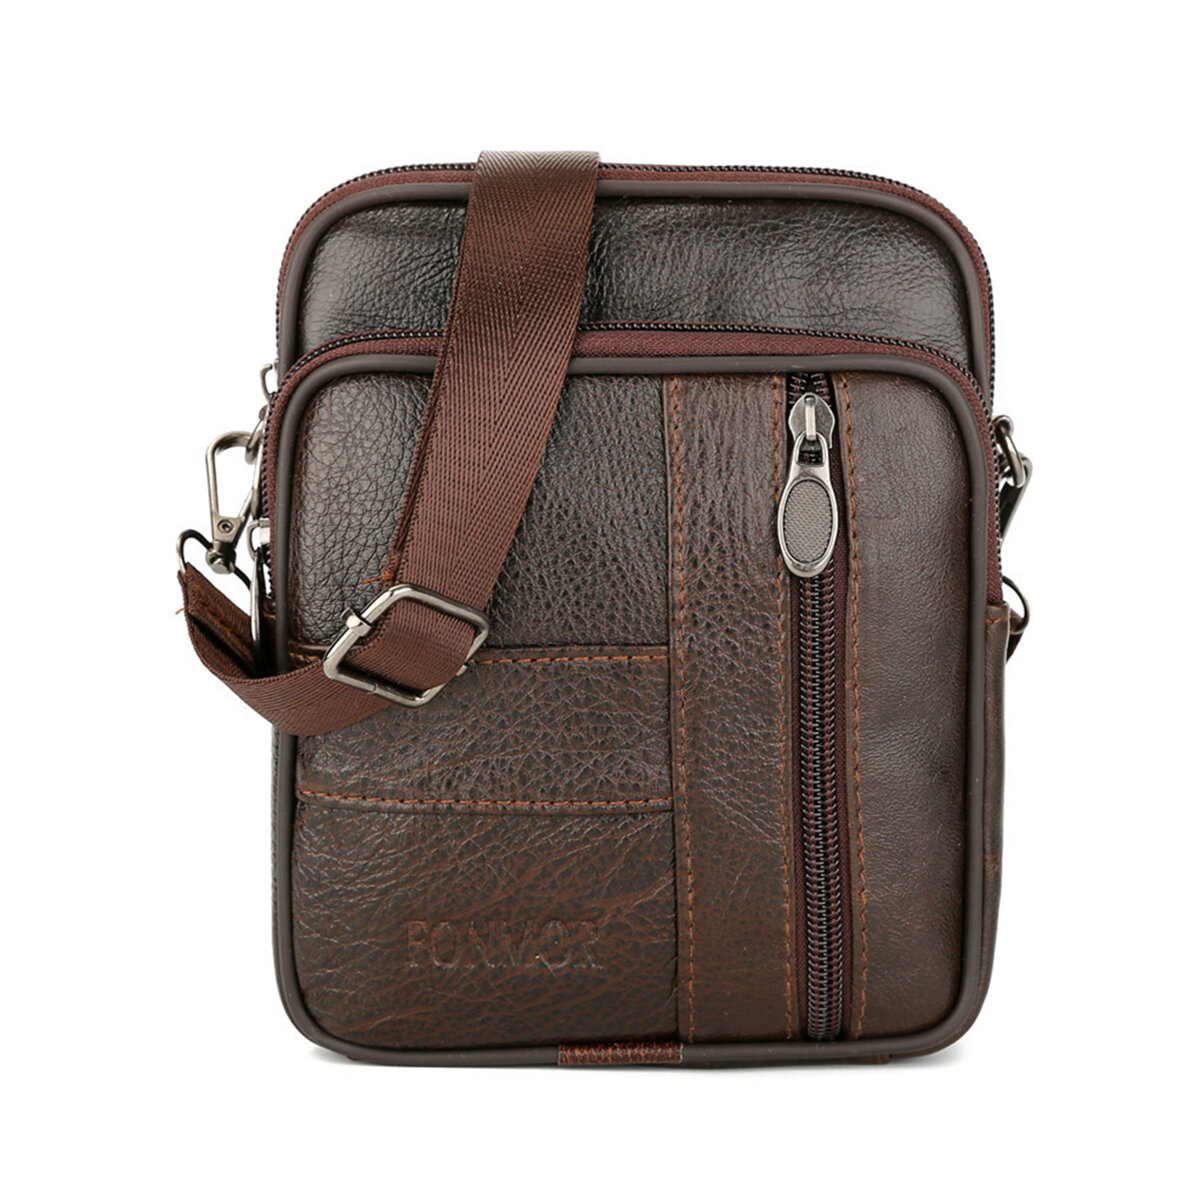 1.5L Men Genuine Leather Shoulder Bag Crossbody Messenger Handbag Phone Case Pouch Outdoor Travel   